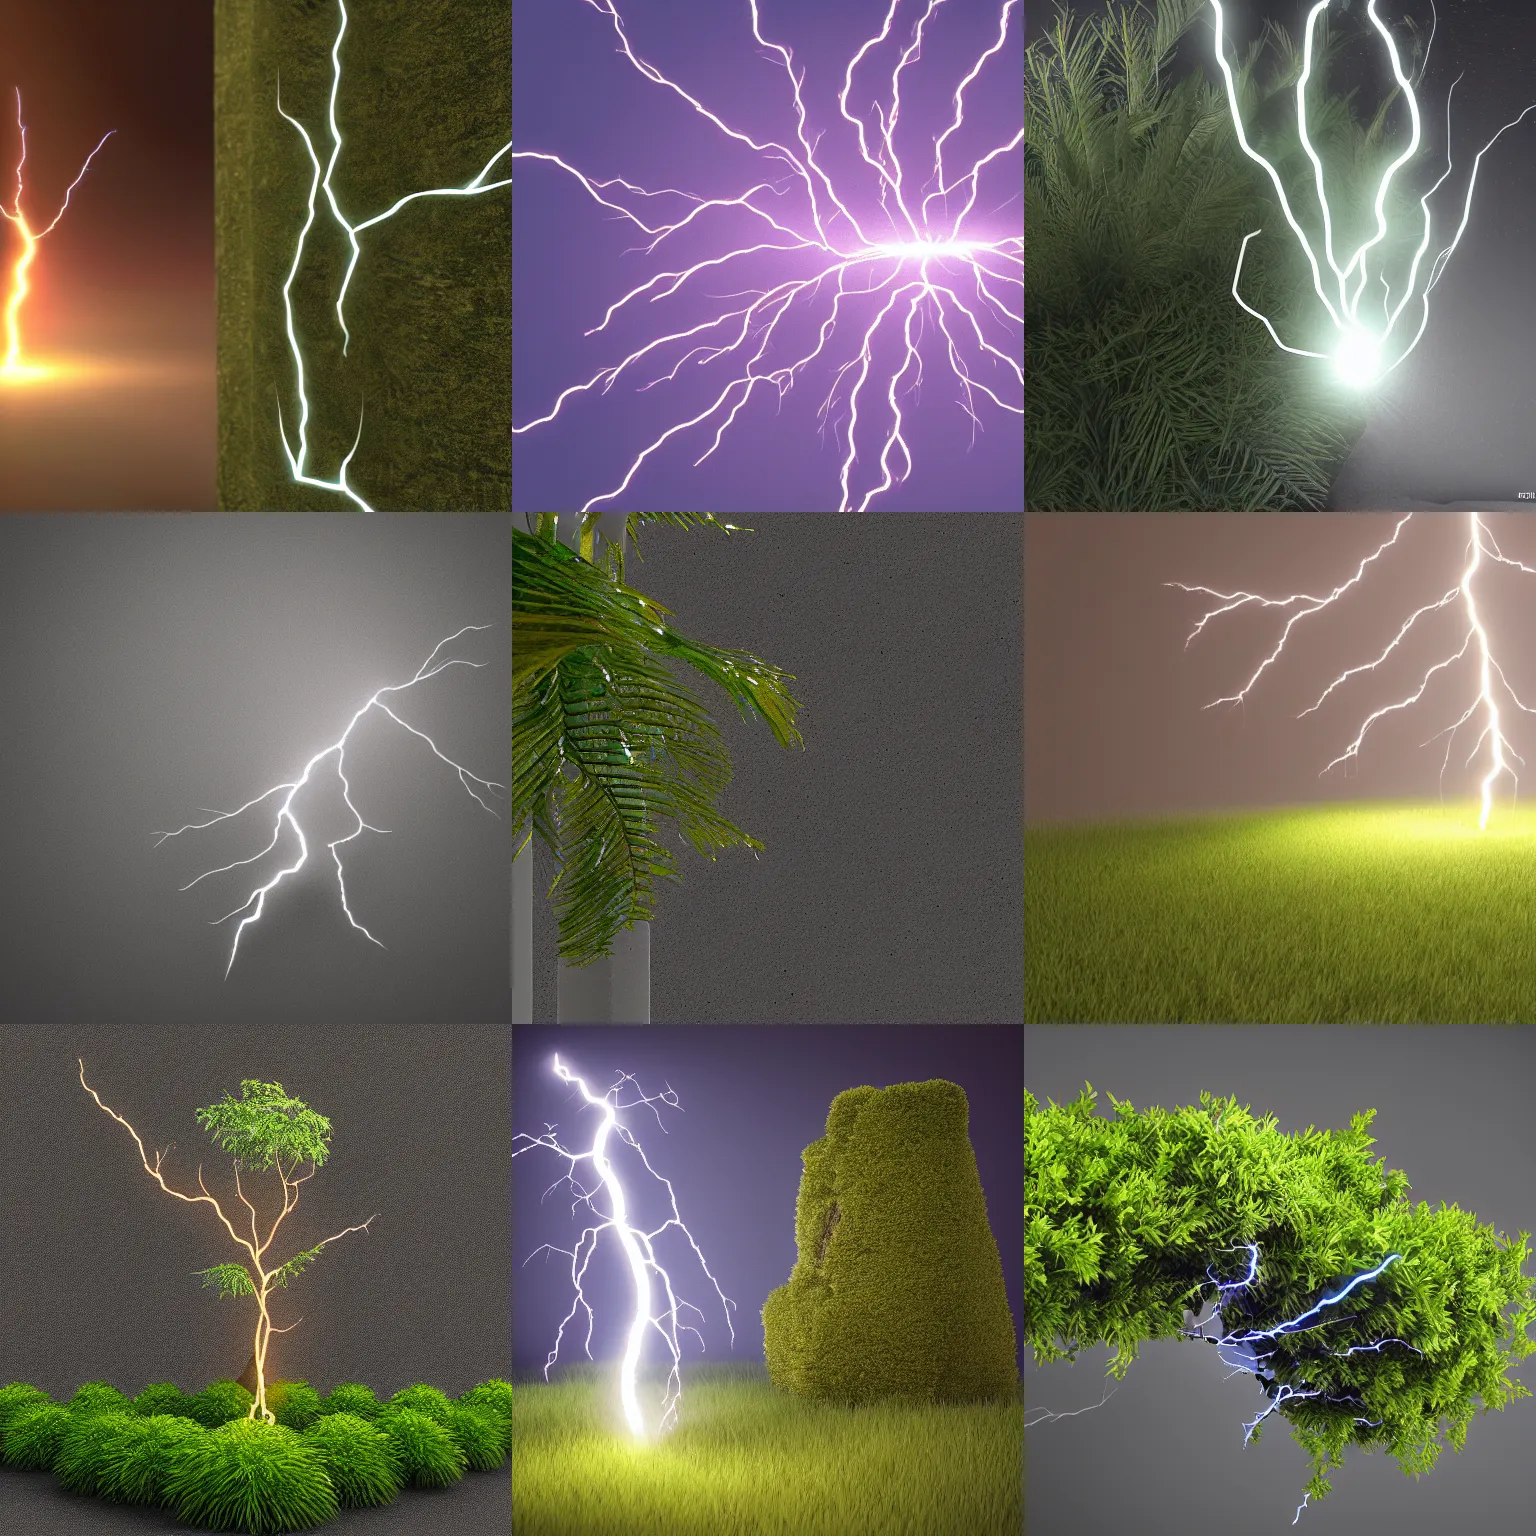 Prompt: lightning bolt striking a bush, octane render